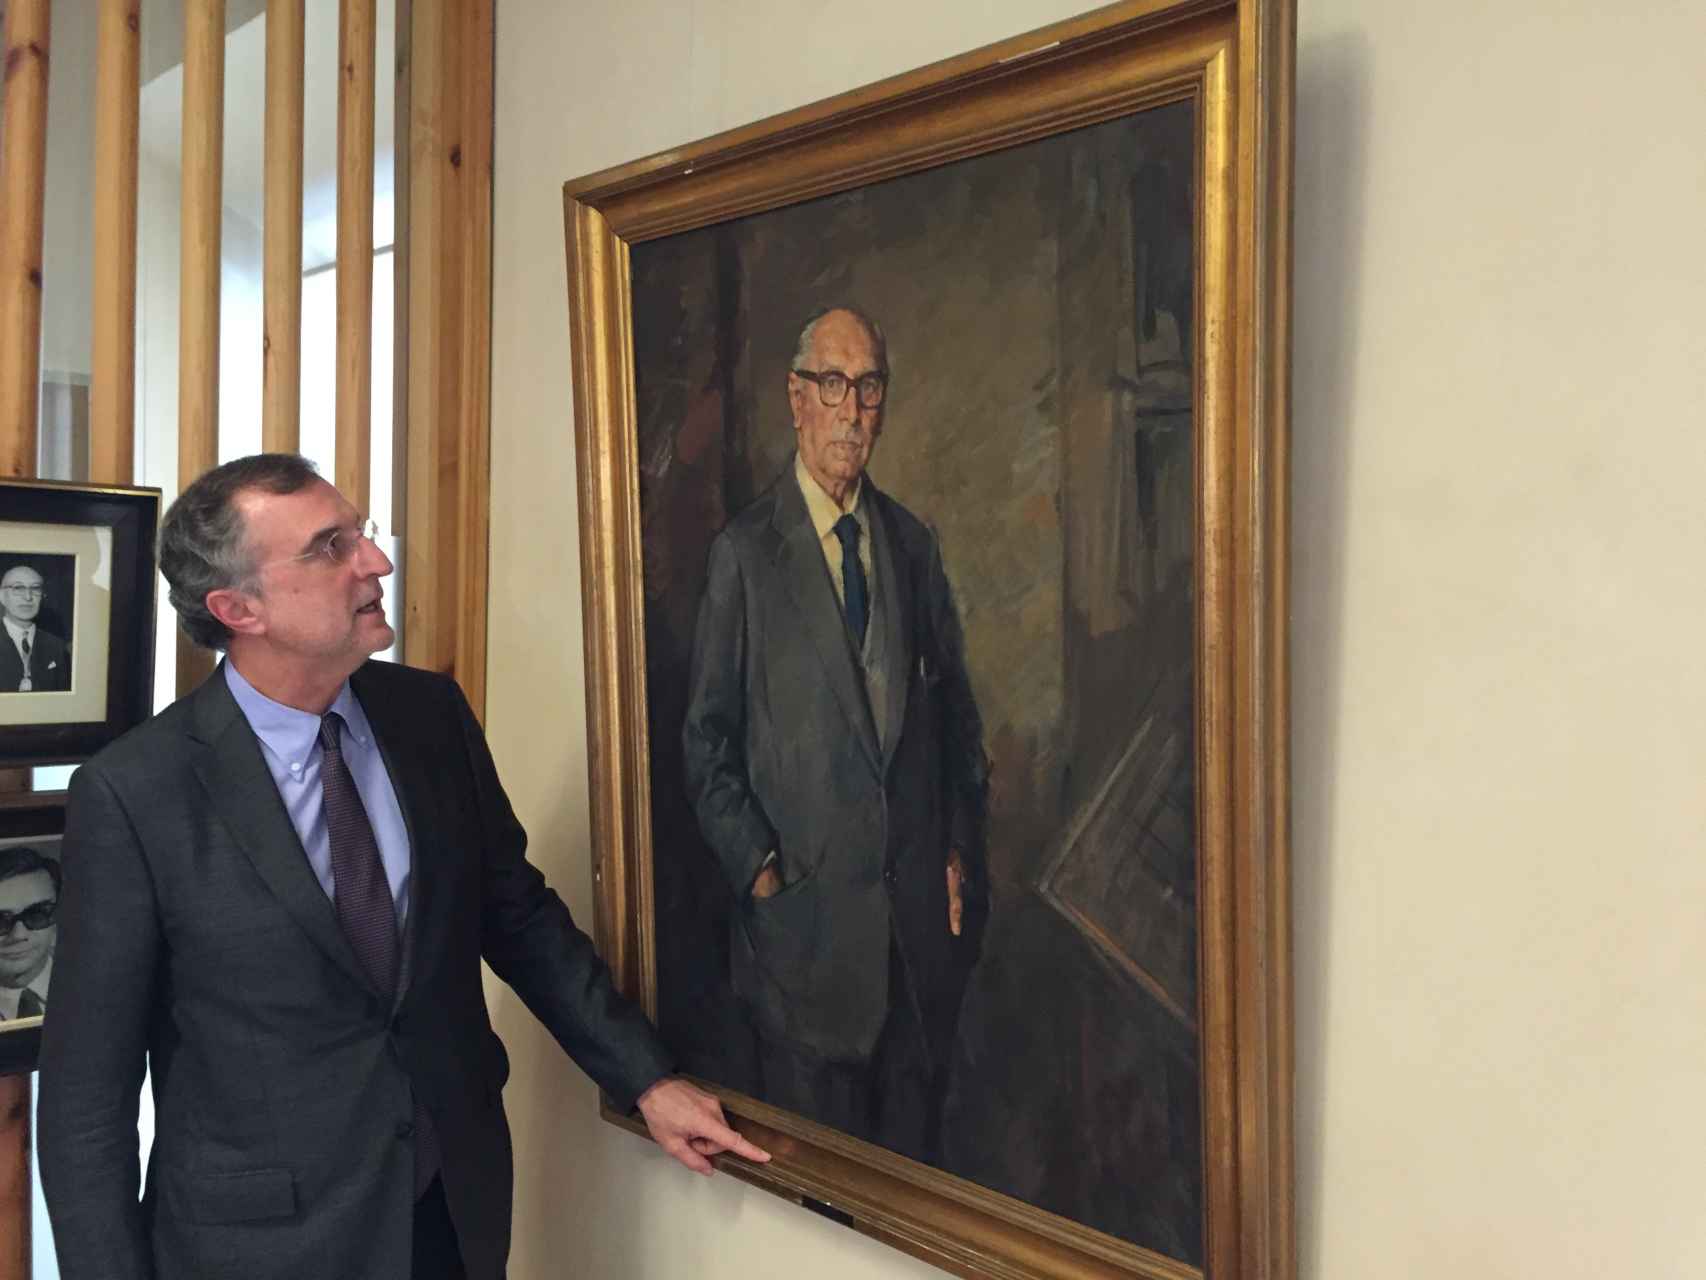 El decano junto al retrato de Secundino Zuazo, su homólogo en la Segunda República.